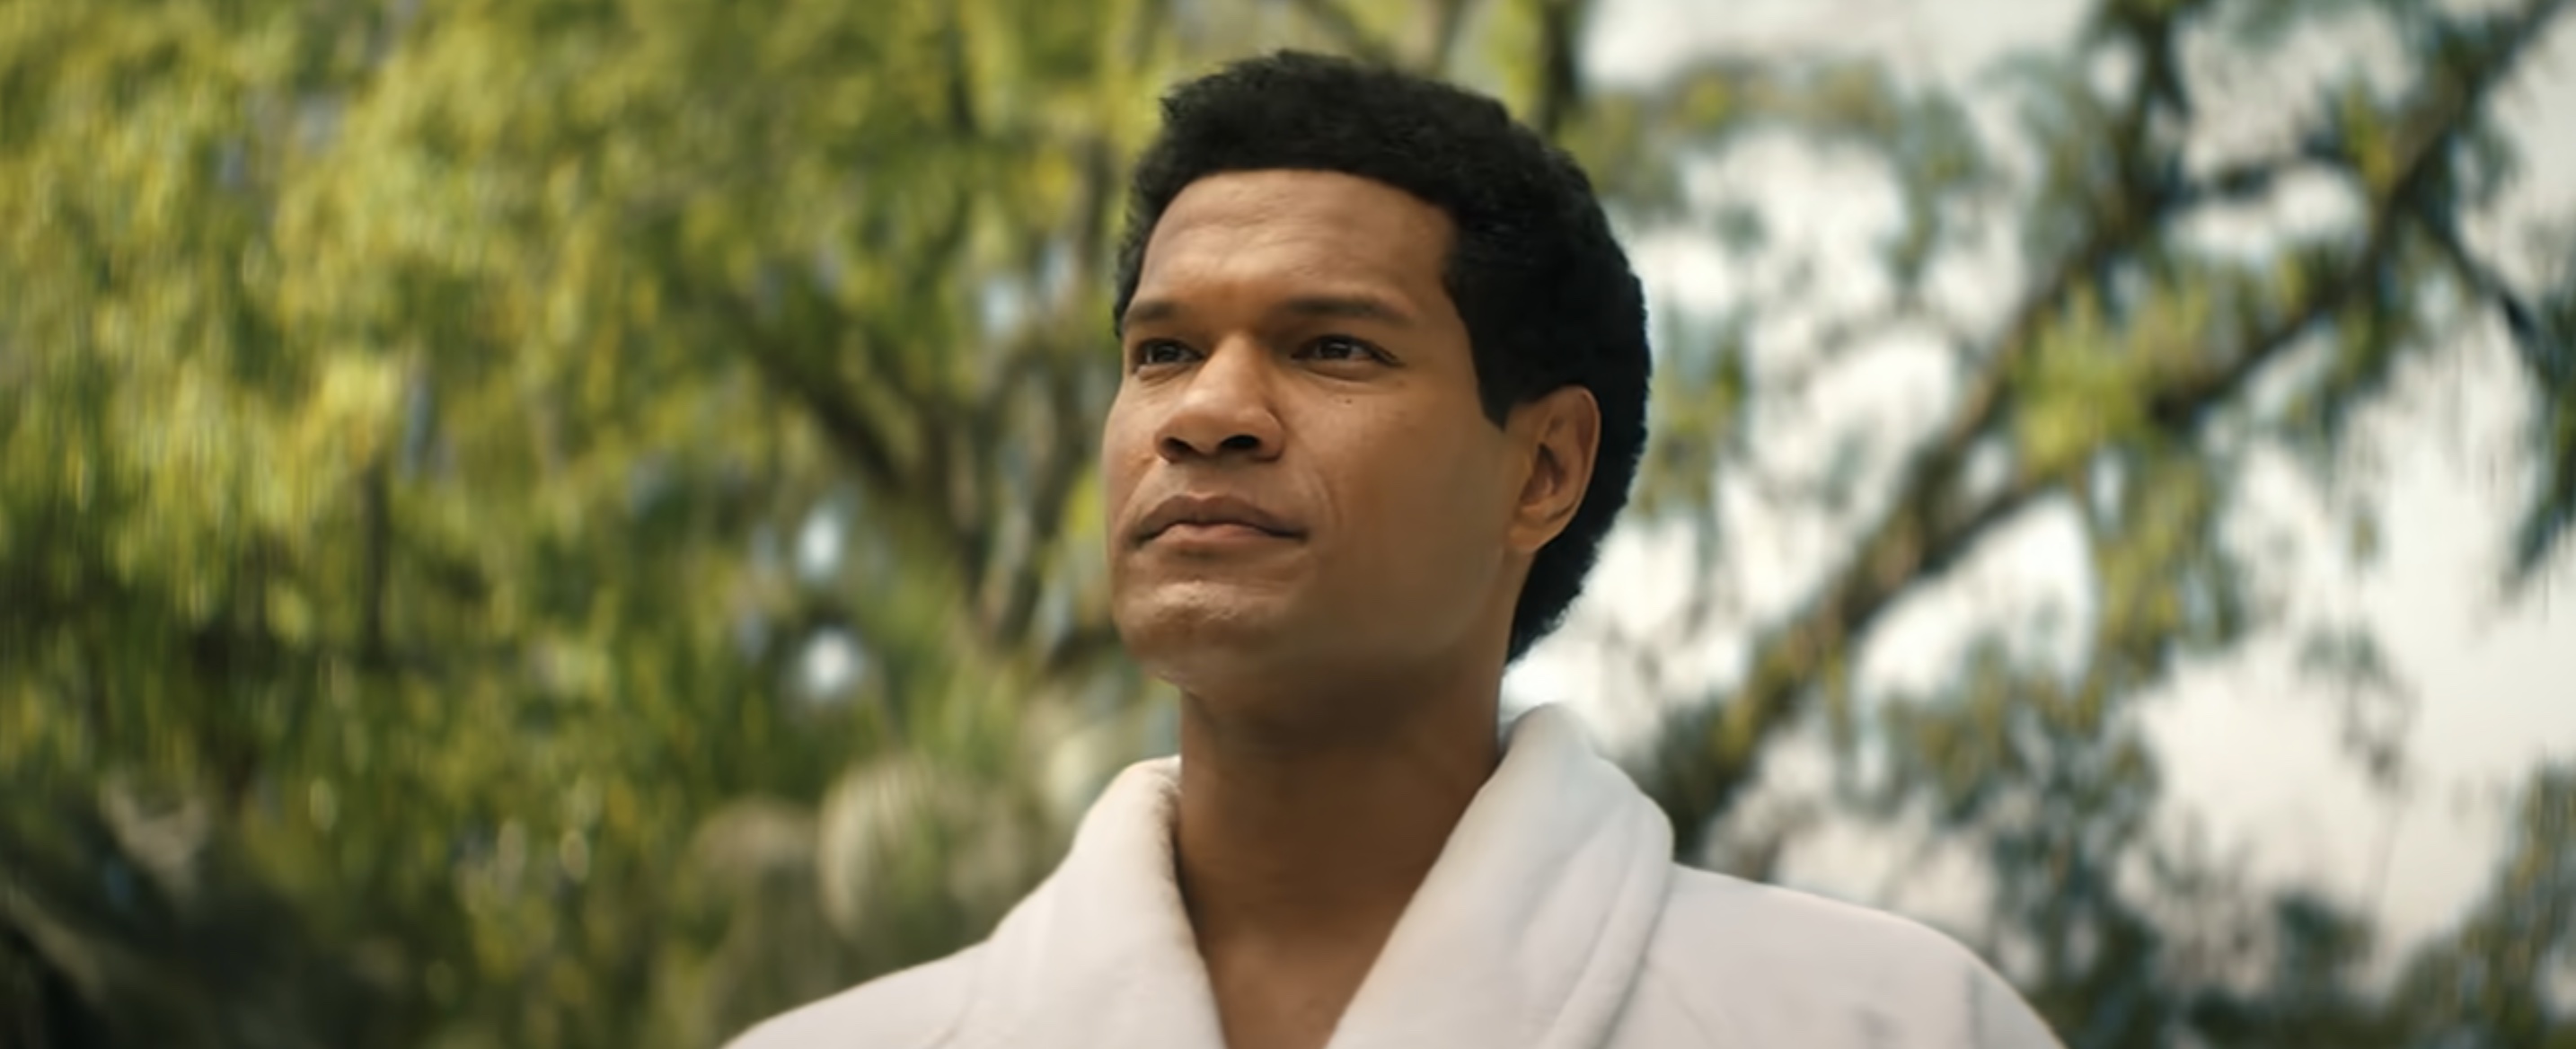 Big George Foreman Cast on Netflix - Sullivan Jones as Muhammad Ali